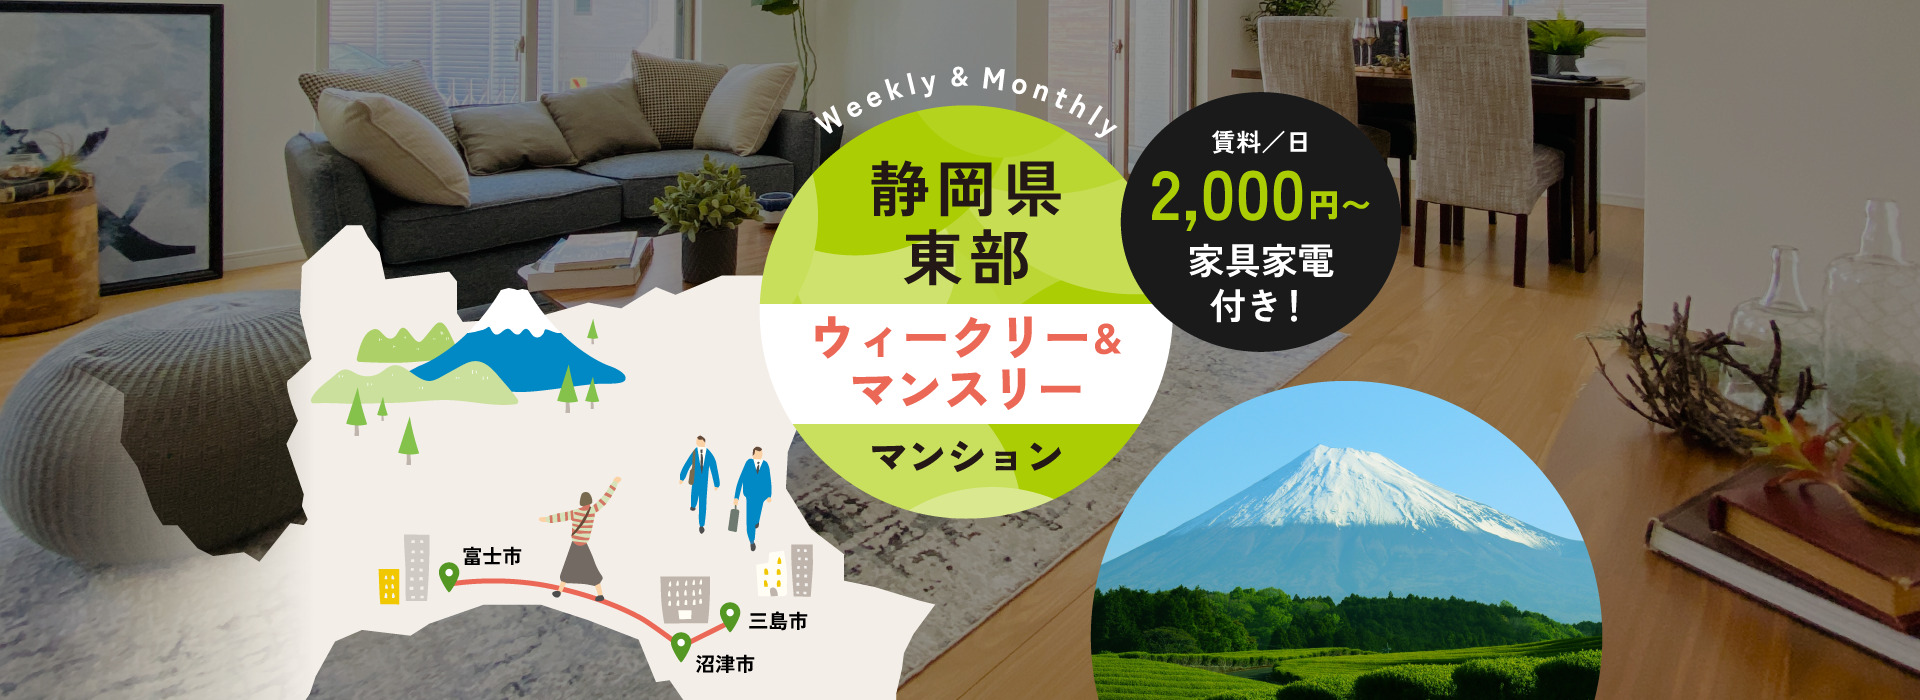 富士市・沼津市・三島市を中心に静岡県東部でマンスリーマンション・ウィークリーマンションを運用しています。法人様の出張や研修、旅行に便利な家具家電付き賃貸